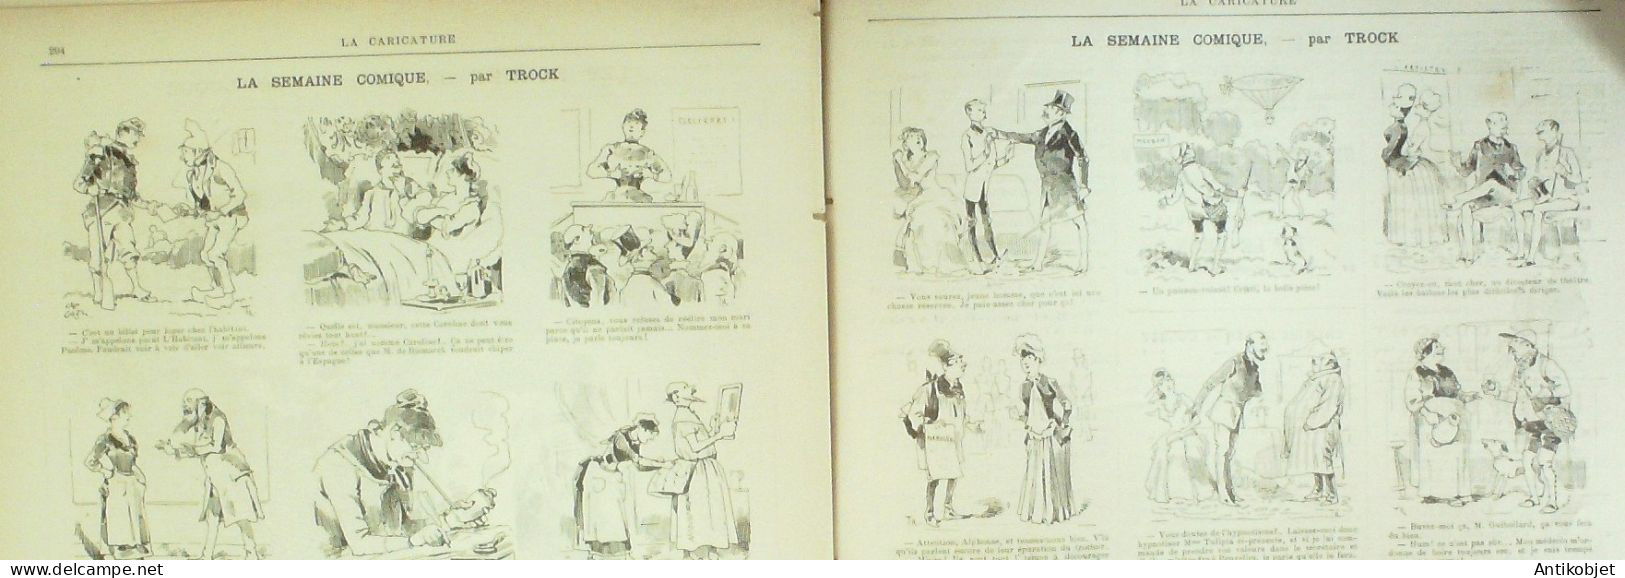 La Caricature 1885 N°298 Amour Jaloux Caran D'Ache Gino Job De Galifet Paar Luque Caran D'Ache - Magazines - Before 1900